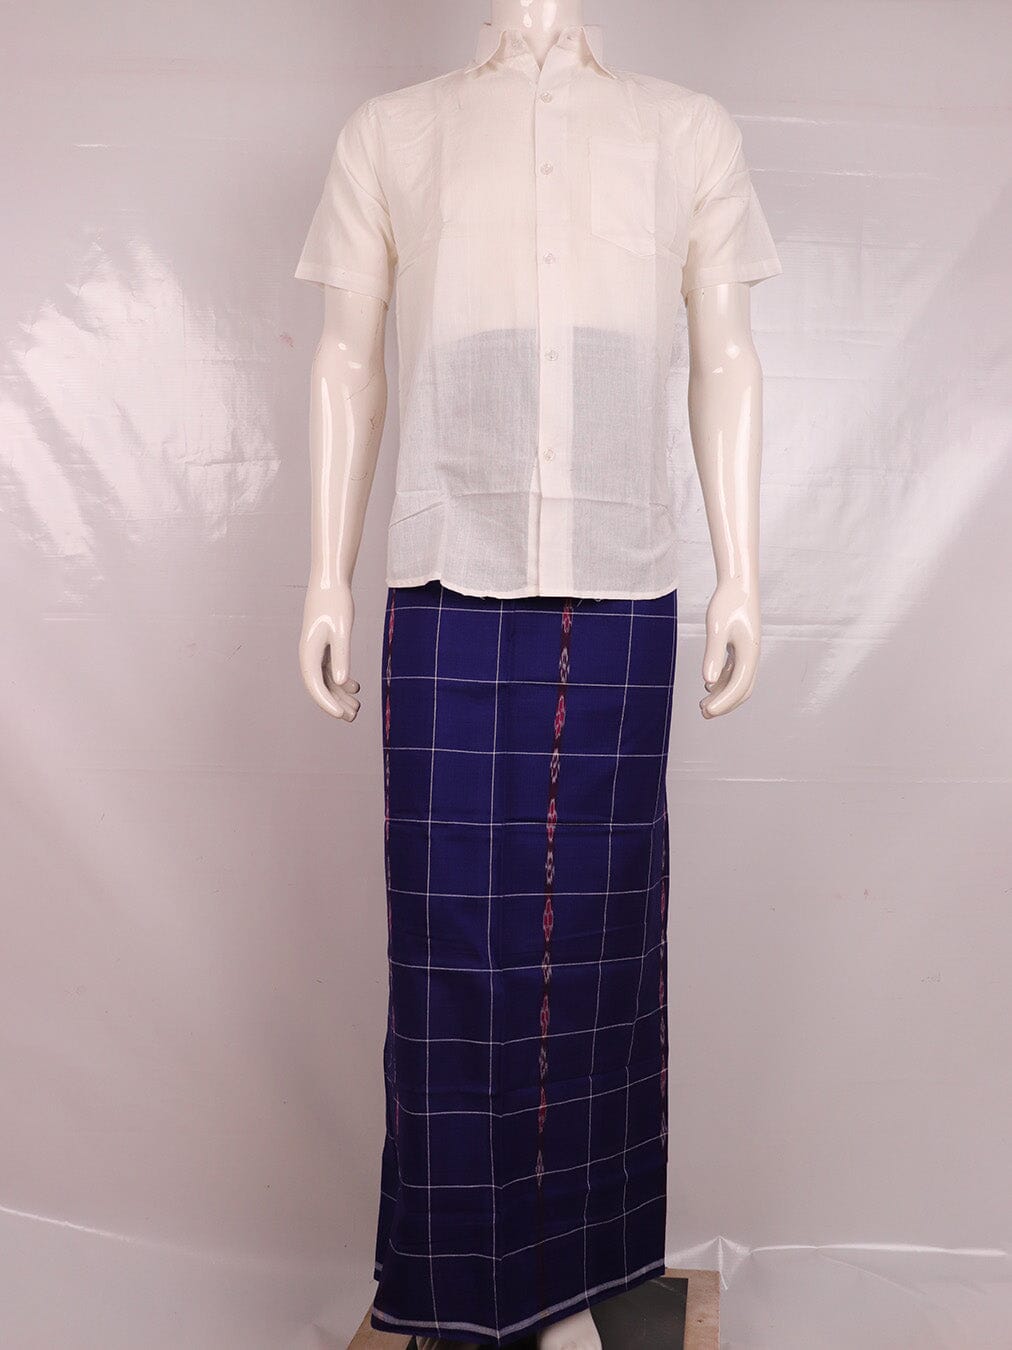 Sambalpuri Pure Cotton Handloom Lungi for Men Handloom Lungi_Cotton Priyadarshini Handloom 